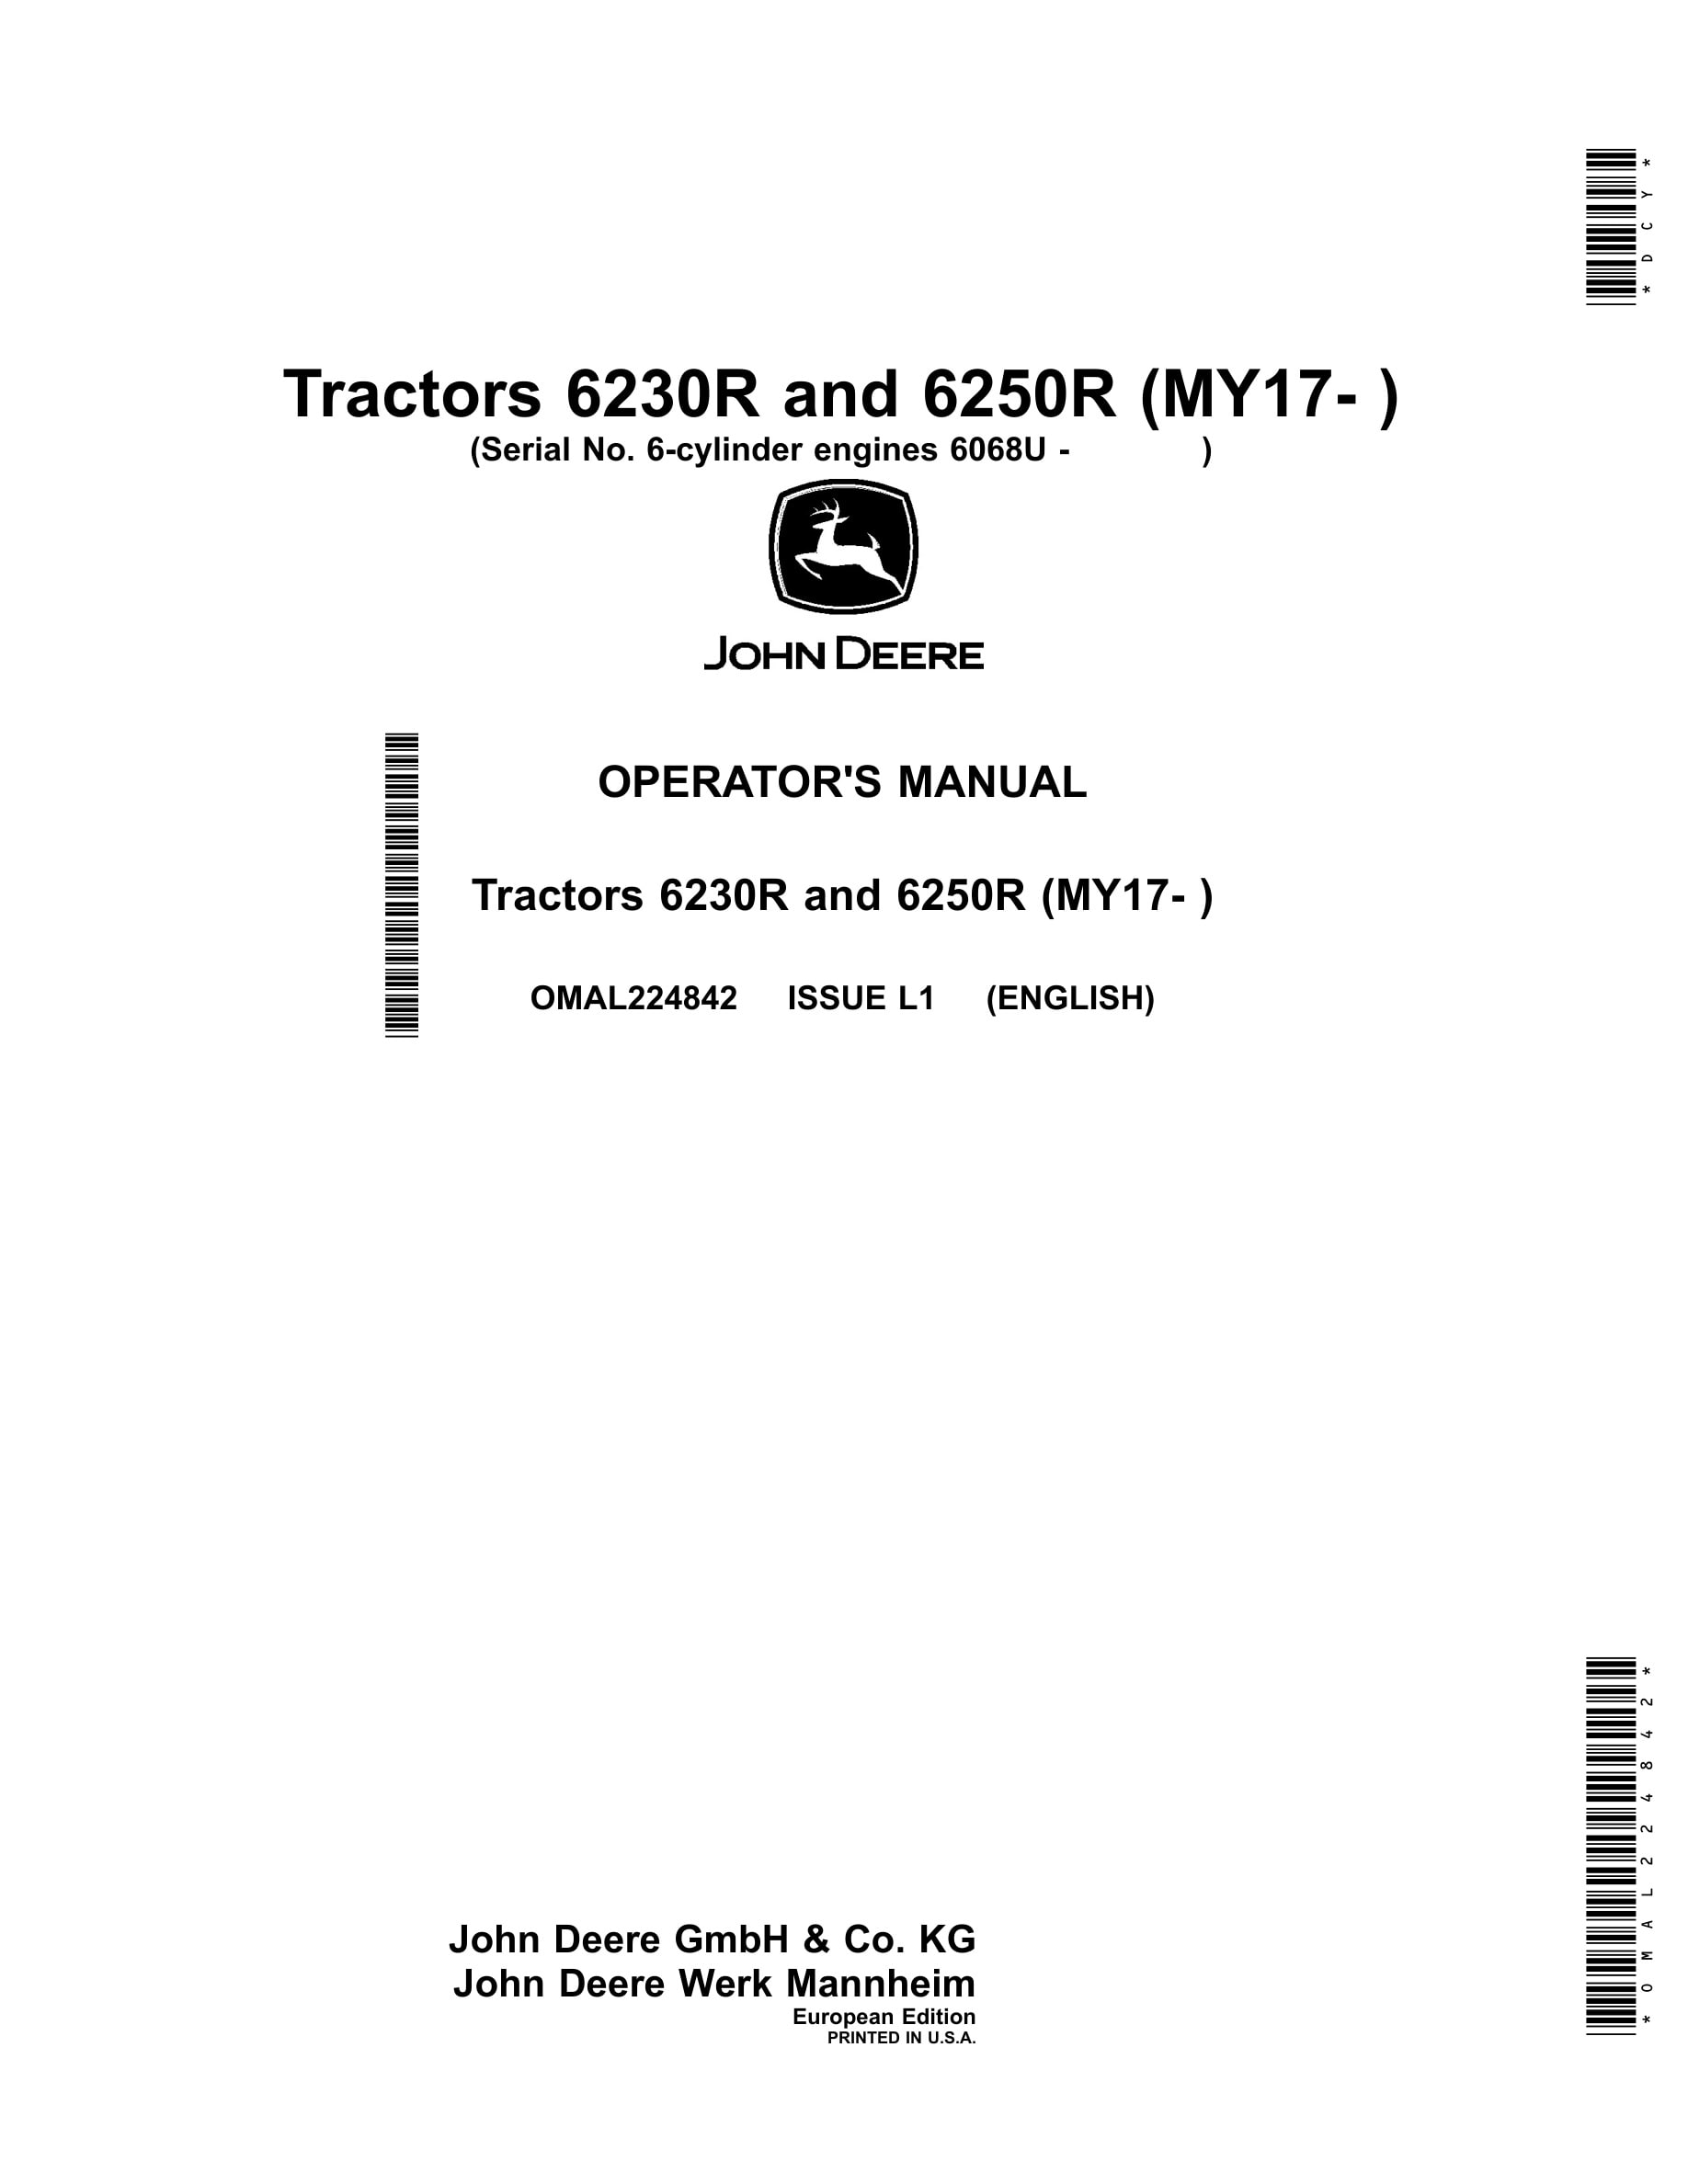 John Deere 6230r And 6250r Tractors Operator Manuals OMAL224842-1